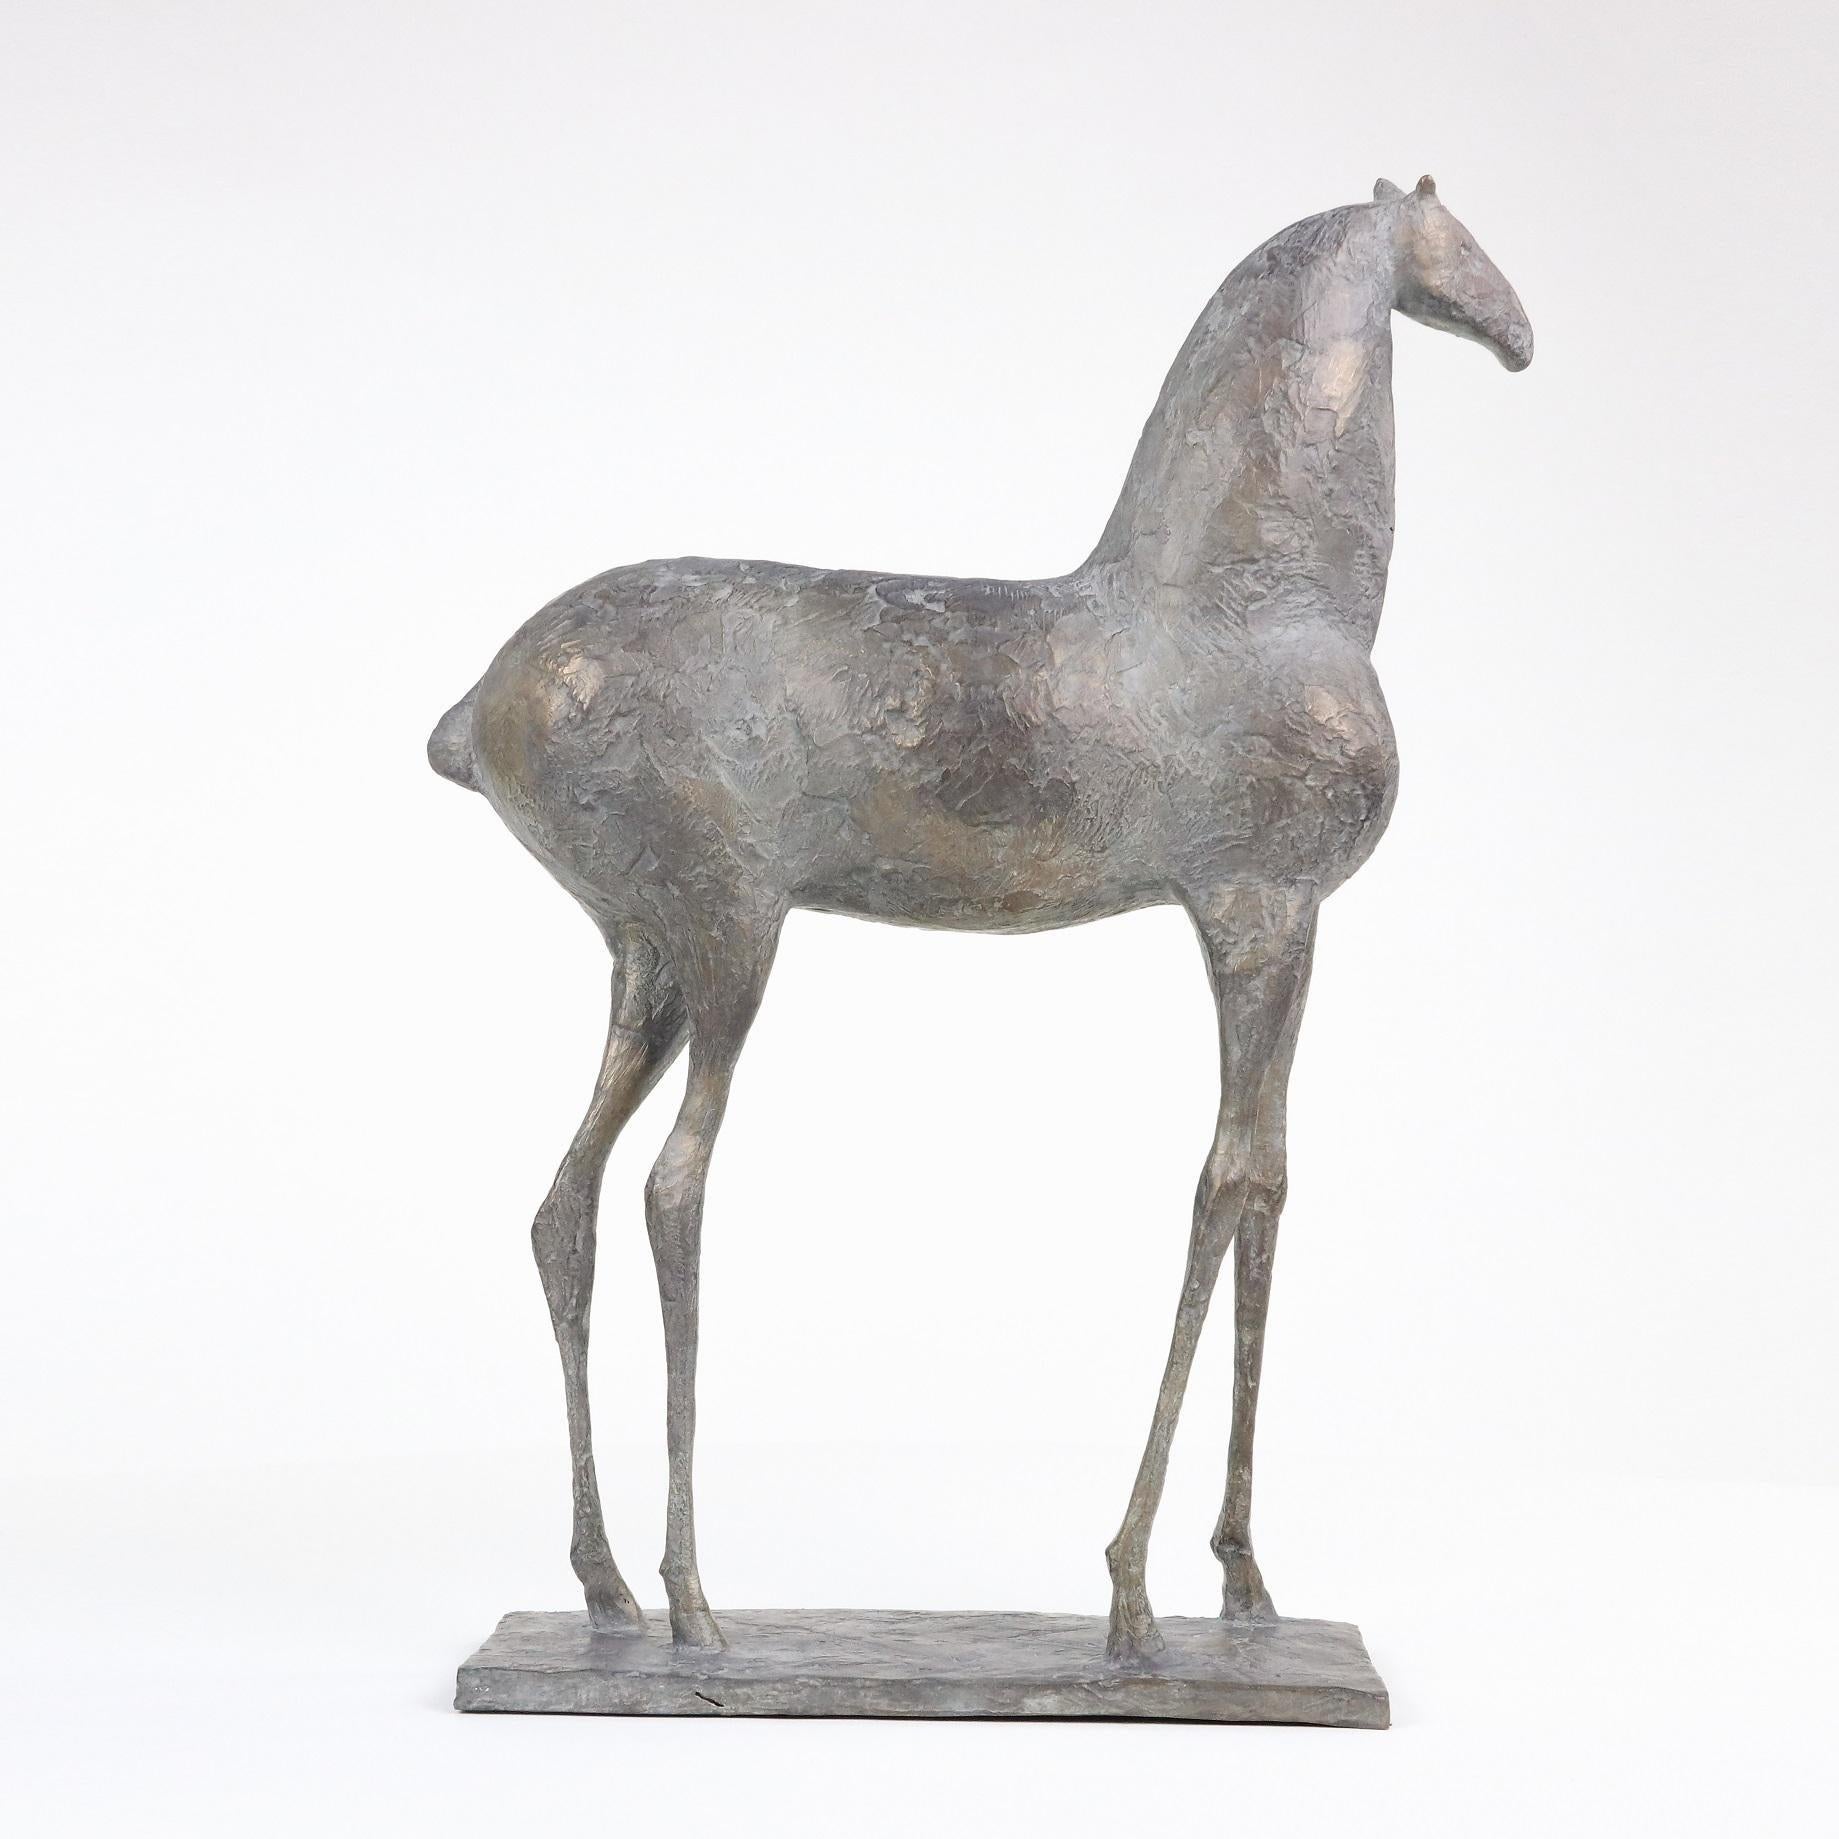 Small Horse II est une sculpture en bronze de l'artiste contemporain français Pierre Yermia, dont les dimensions sont 43 × 33 × 11 cm (16,9 × 13 × 4,3 in). 
La sculpture est signée et numérotée, elle fait partie d'une édition limitée à 8 exemplaires